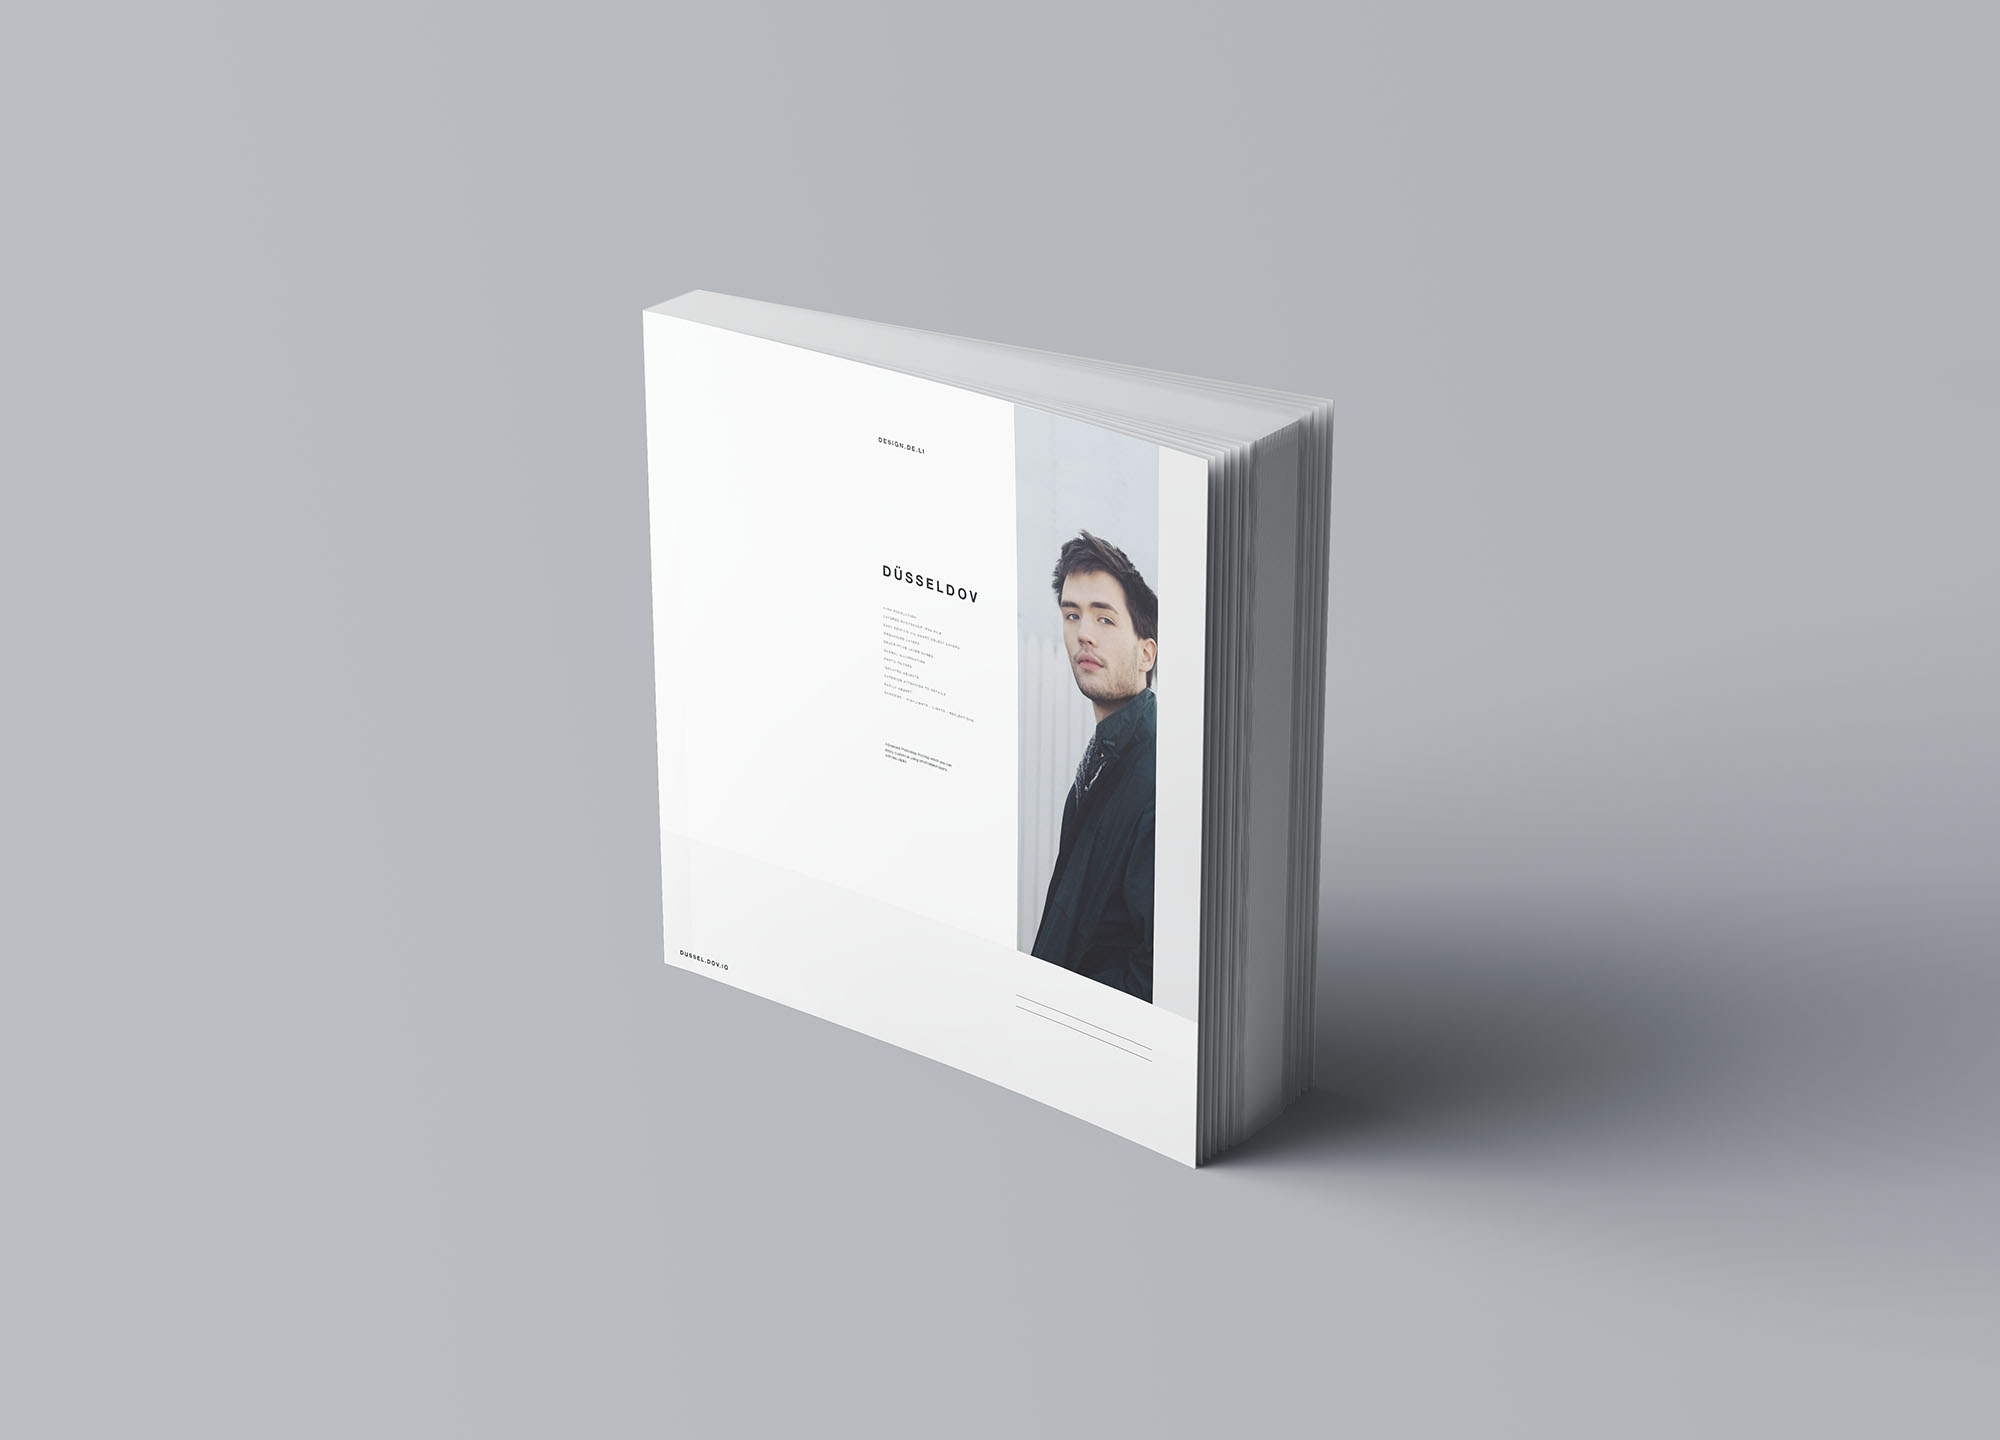 方形软封图书内页版式设计效果图样机非凡图库精选 Square Softcover Book Mockup插图(6)